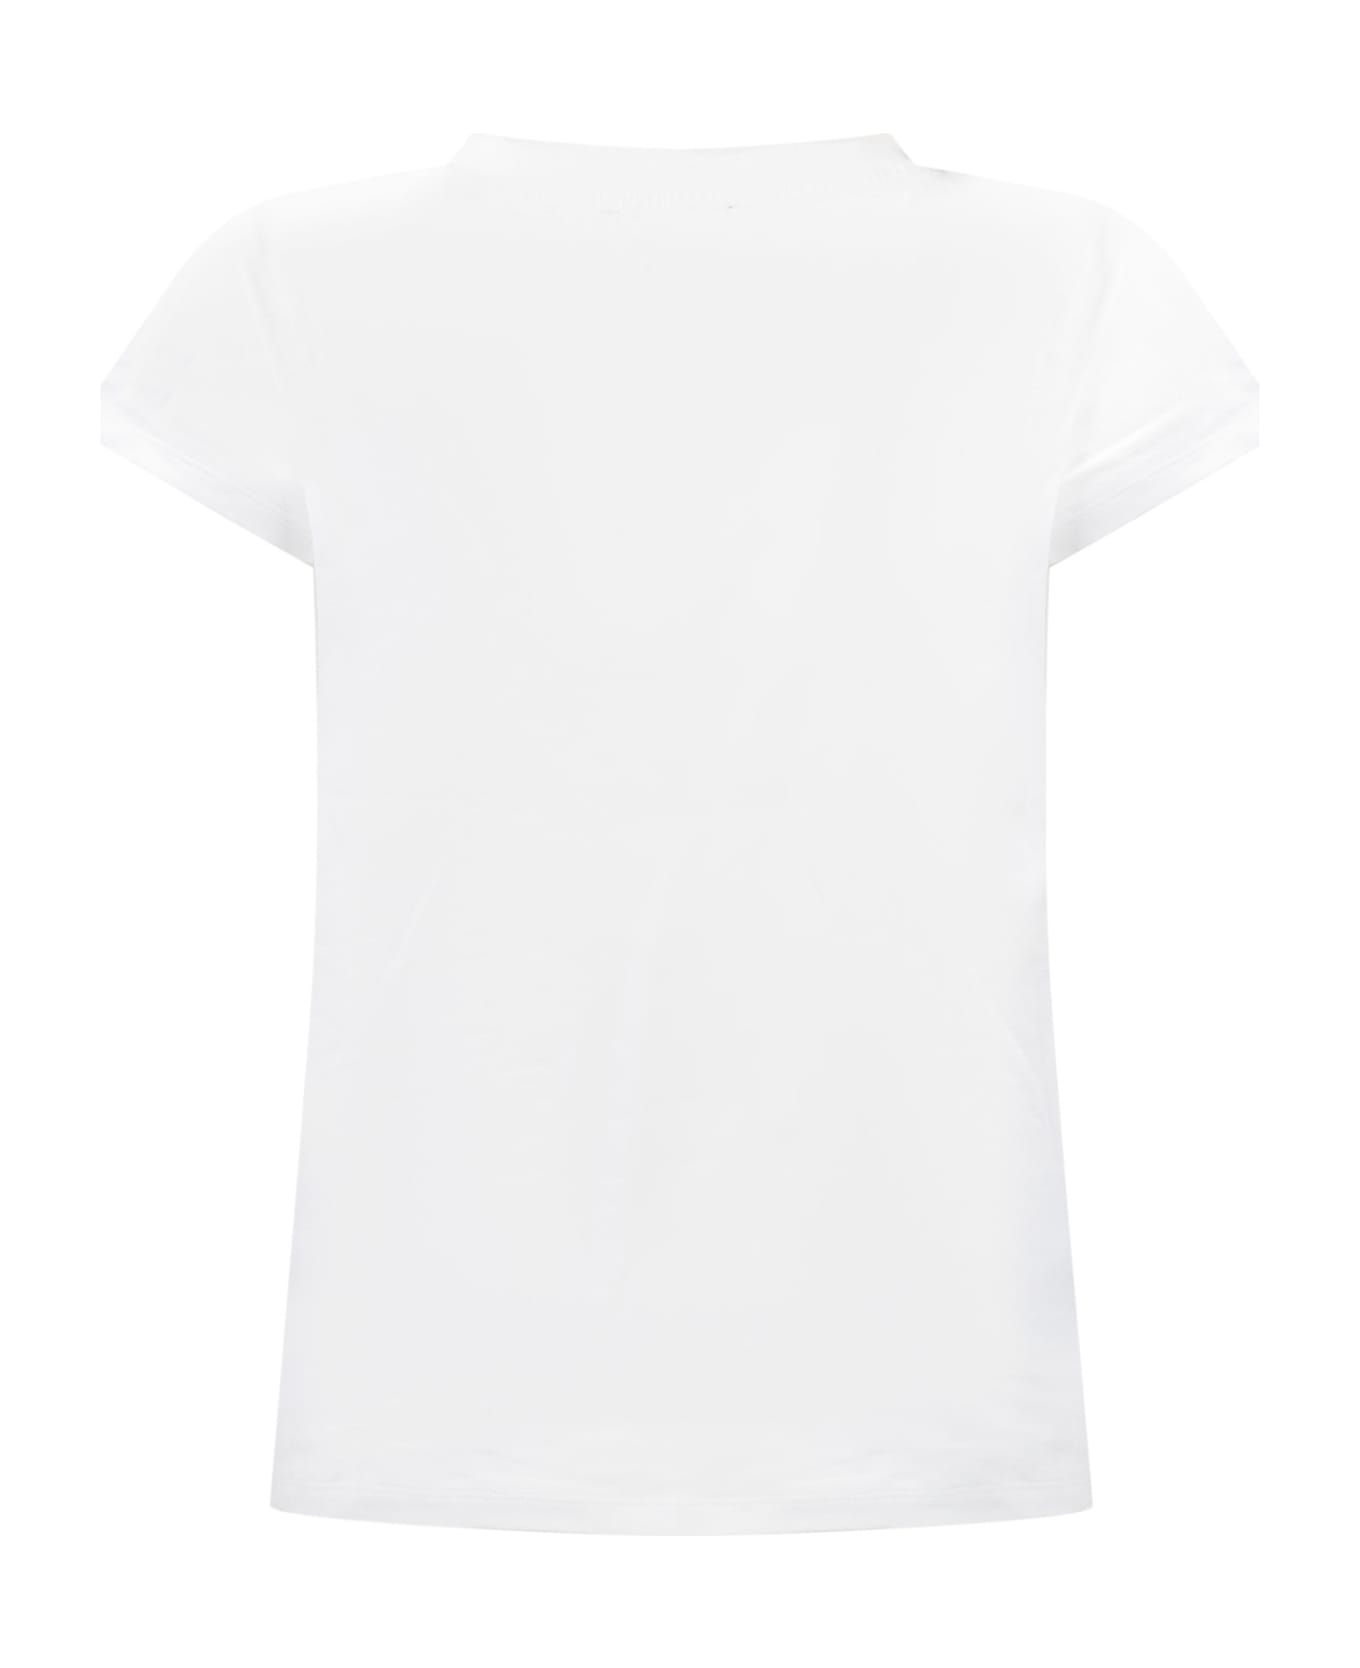 Balmain Logo T-shirt - WHITE Tシャツ＆ポロシャツ